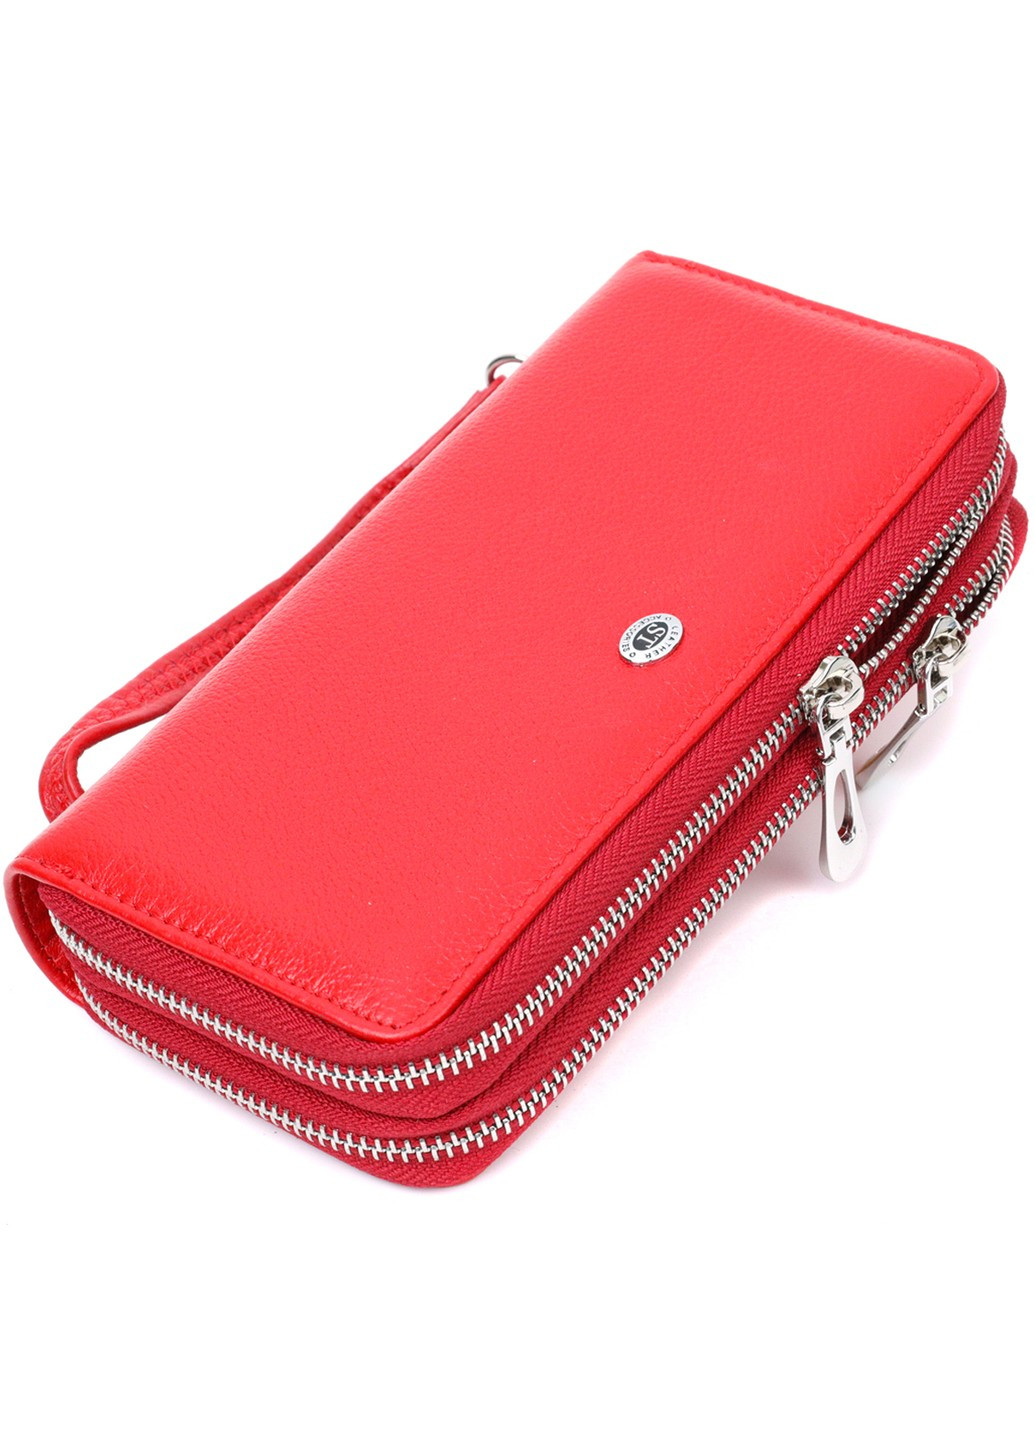 Яркий женский кошелек-клатч с двумя отделениями на молниях 19430 Красный st leather (276457466)